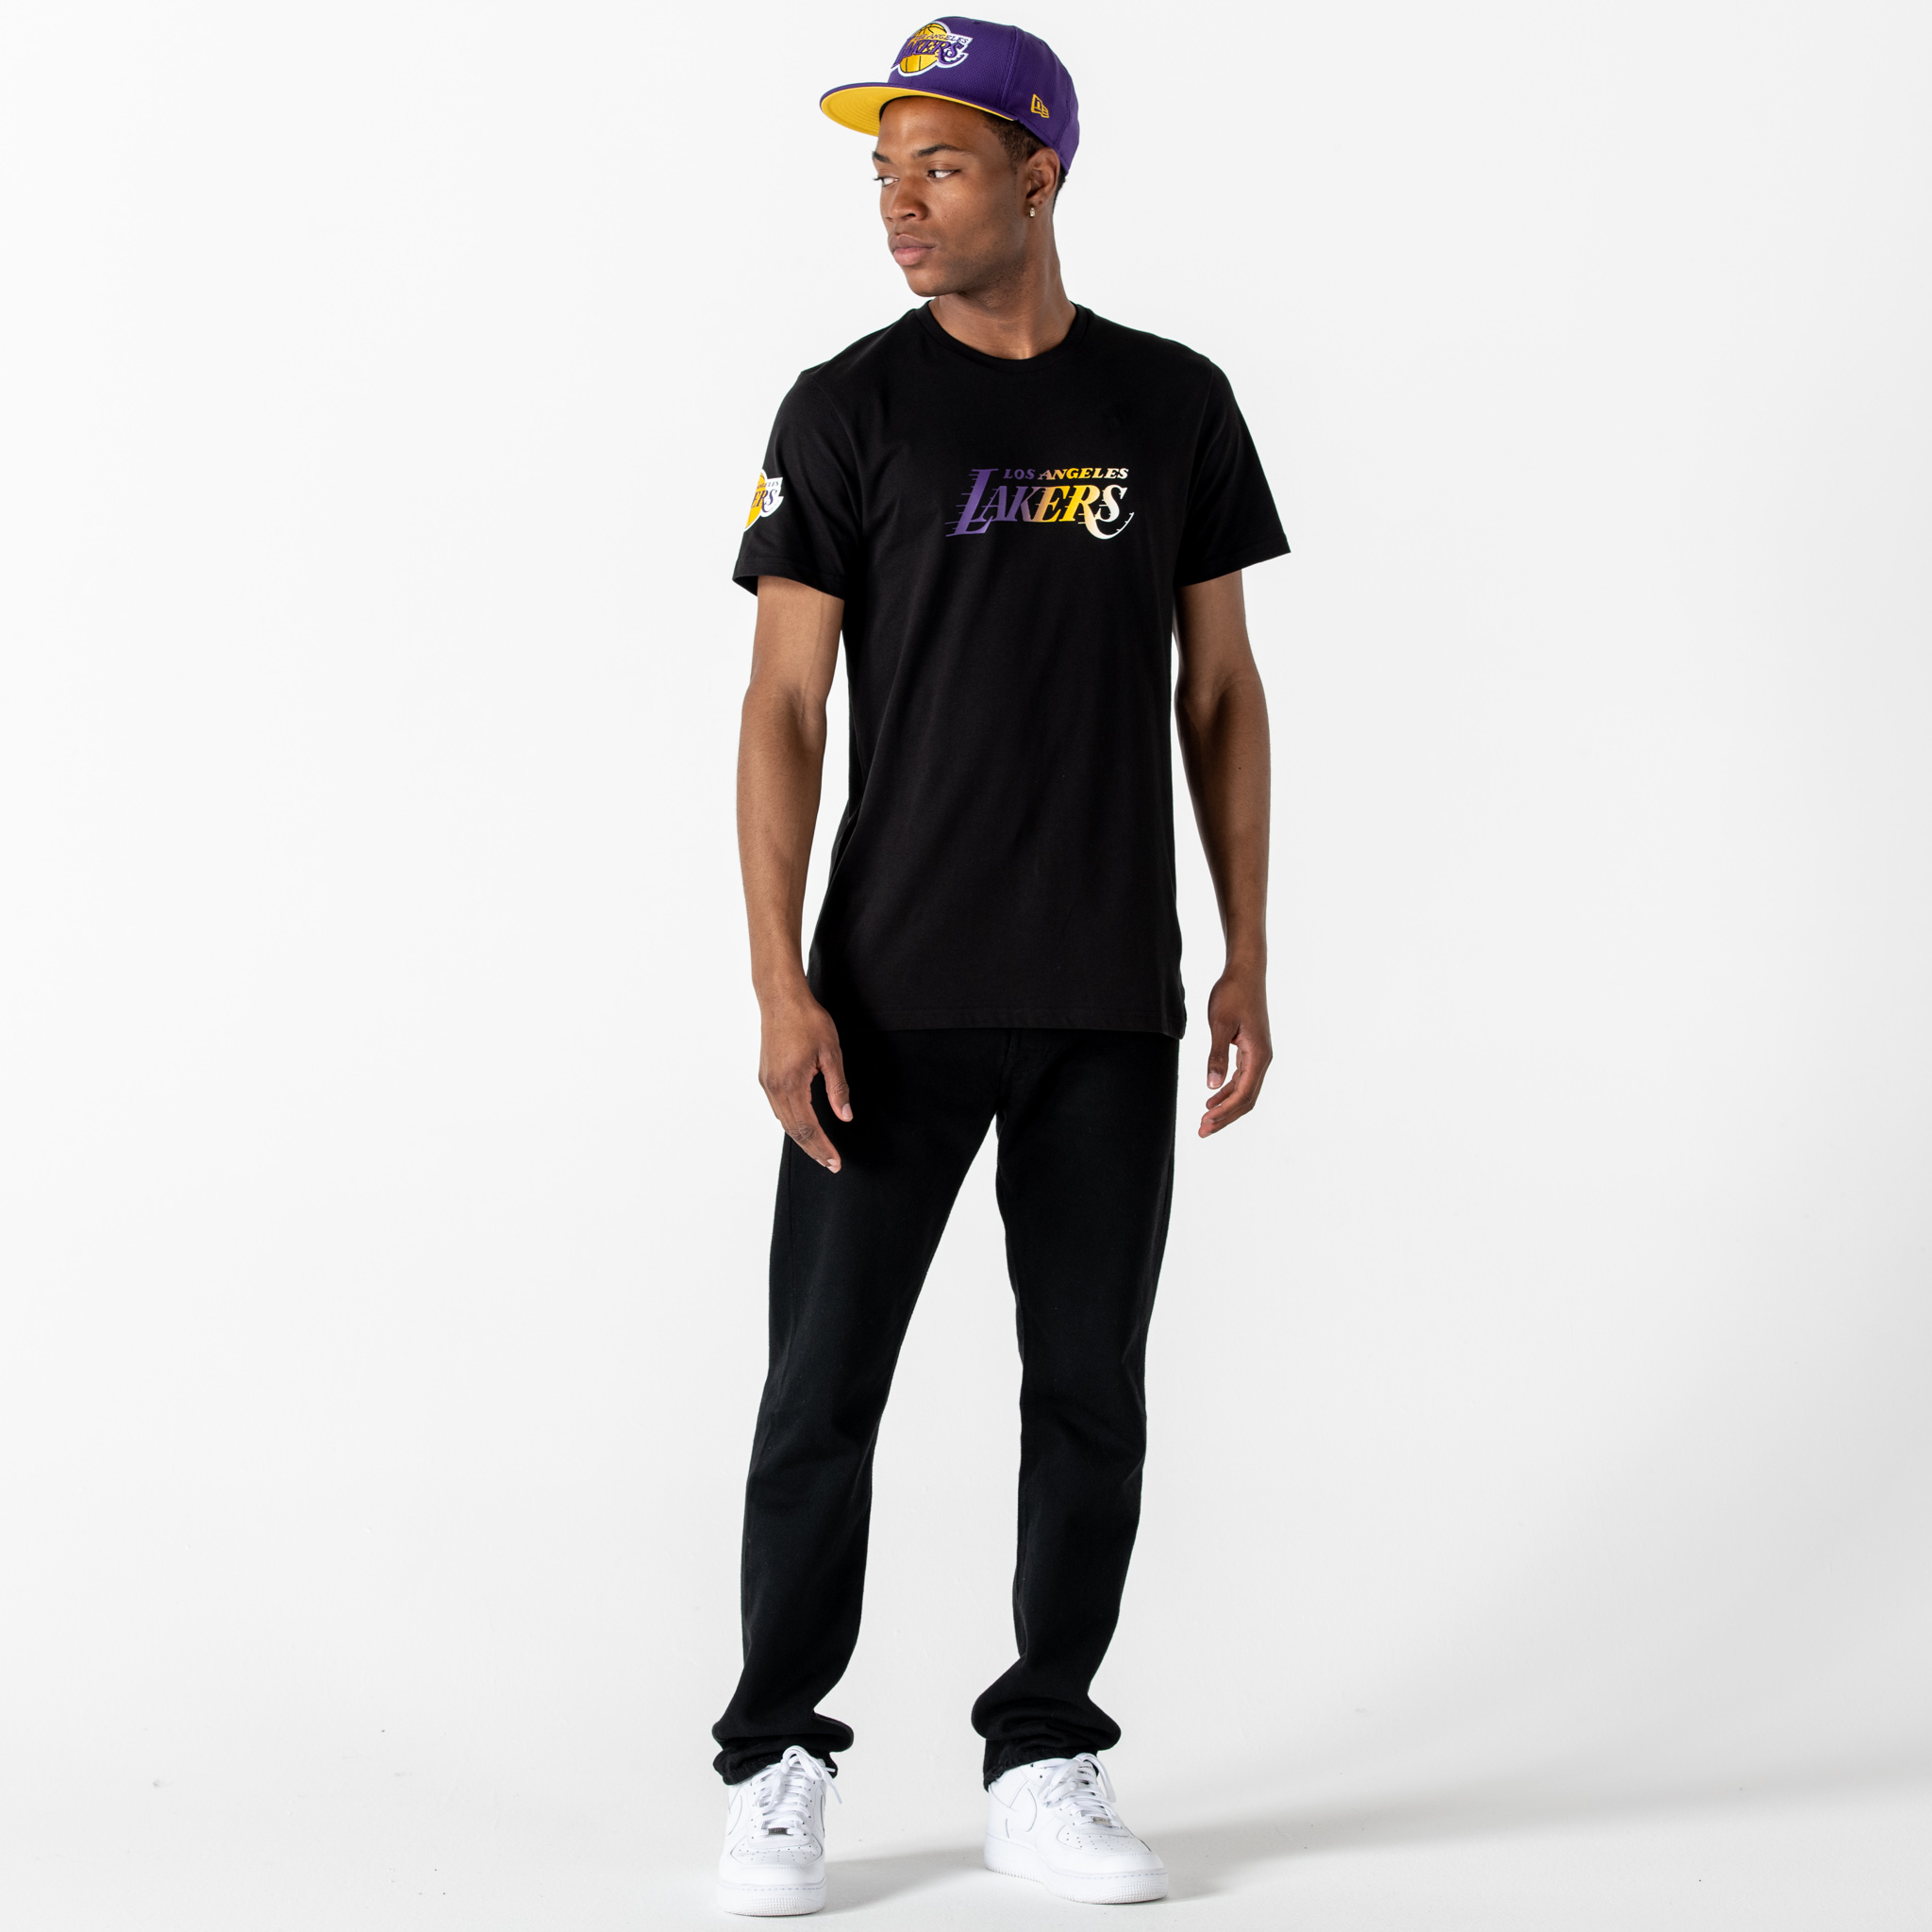 Schwarzes T-Shirt mit falbverlaufendem Los Angeles Lakers Schriftzug